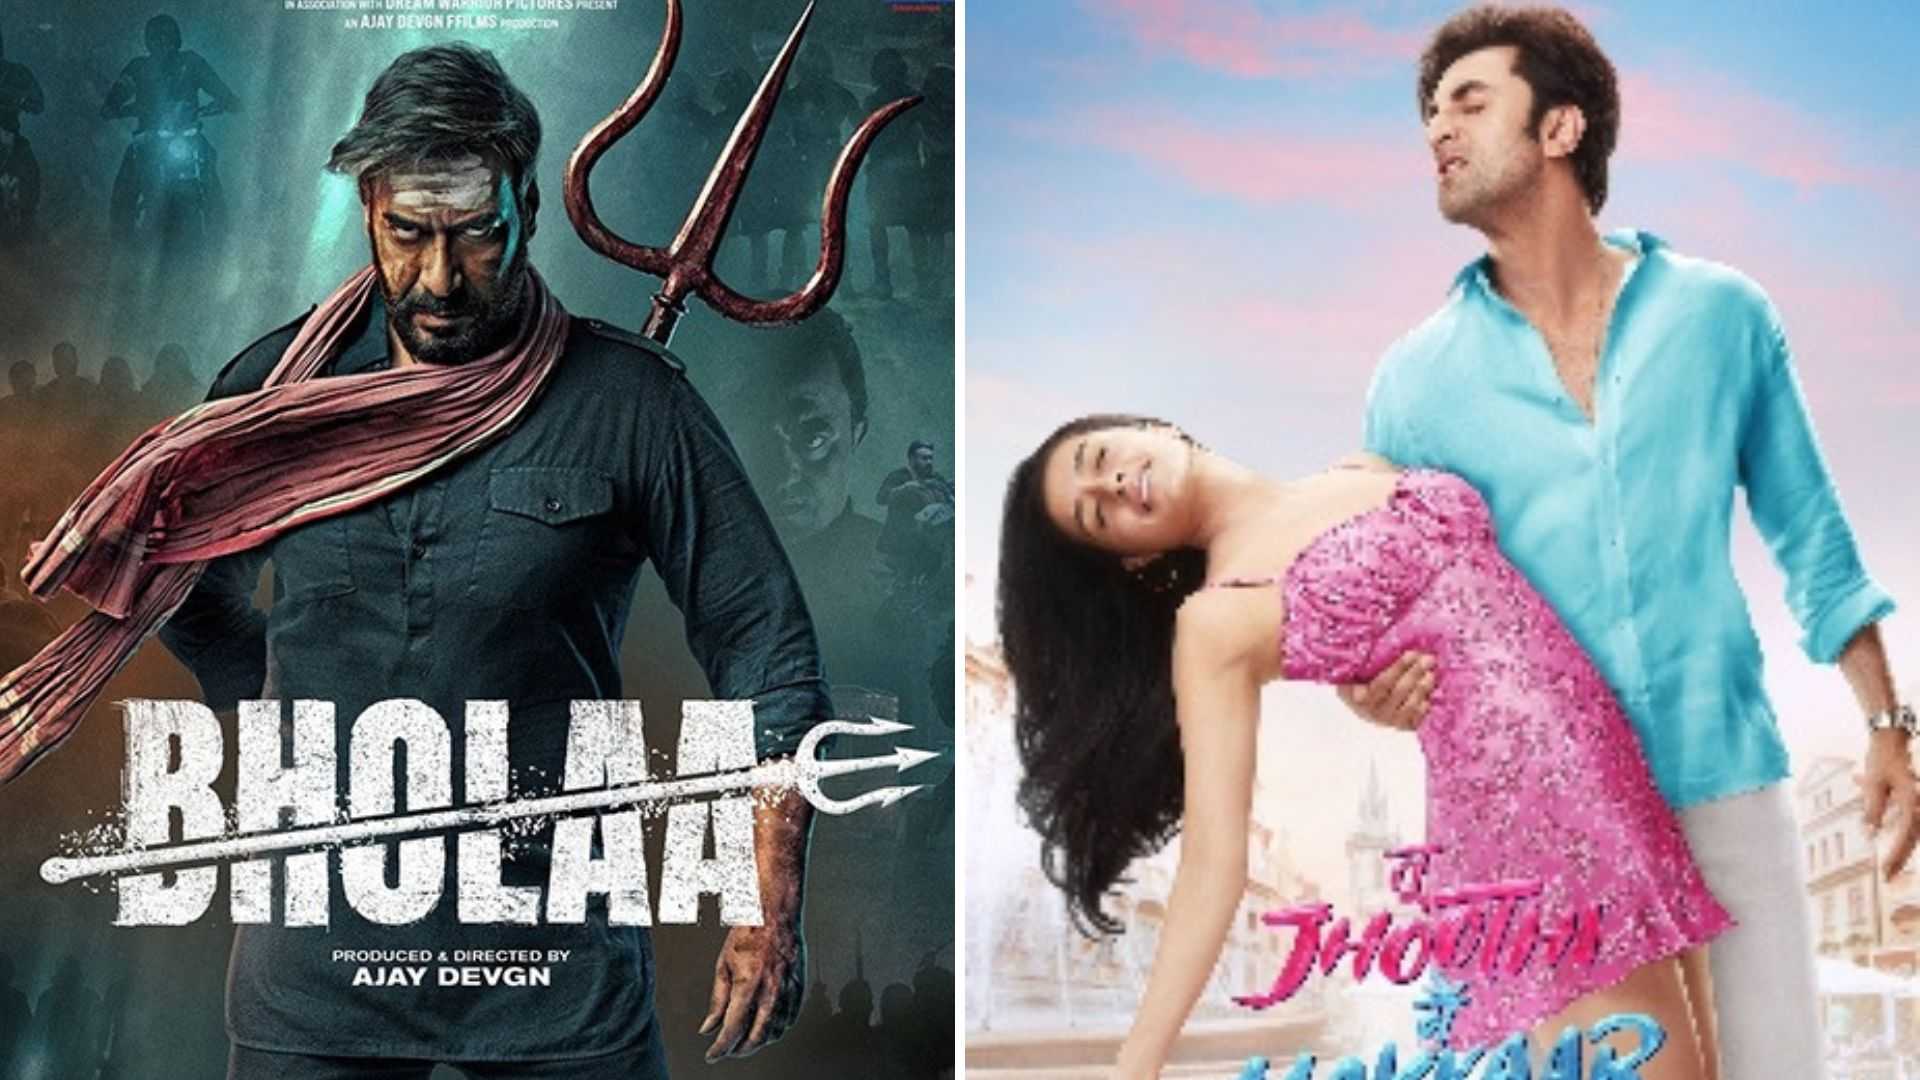 भोला फर्स्ट डे कलेक्शन: 'तू झूठी मैं मक्कार' का रिकॉर्ड तोड़ेगी अजय देवगन और तबू की फिल्म?